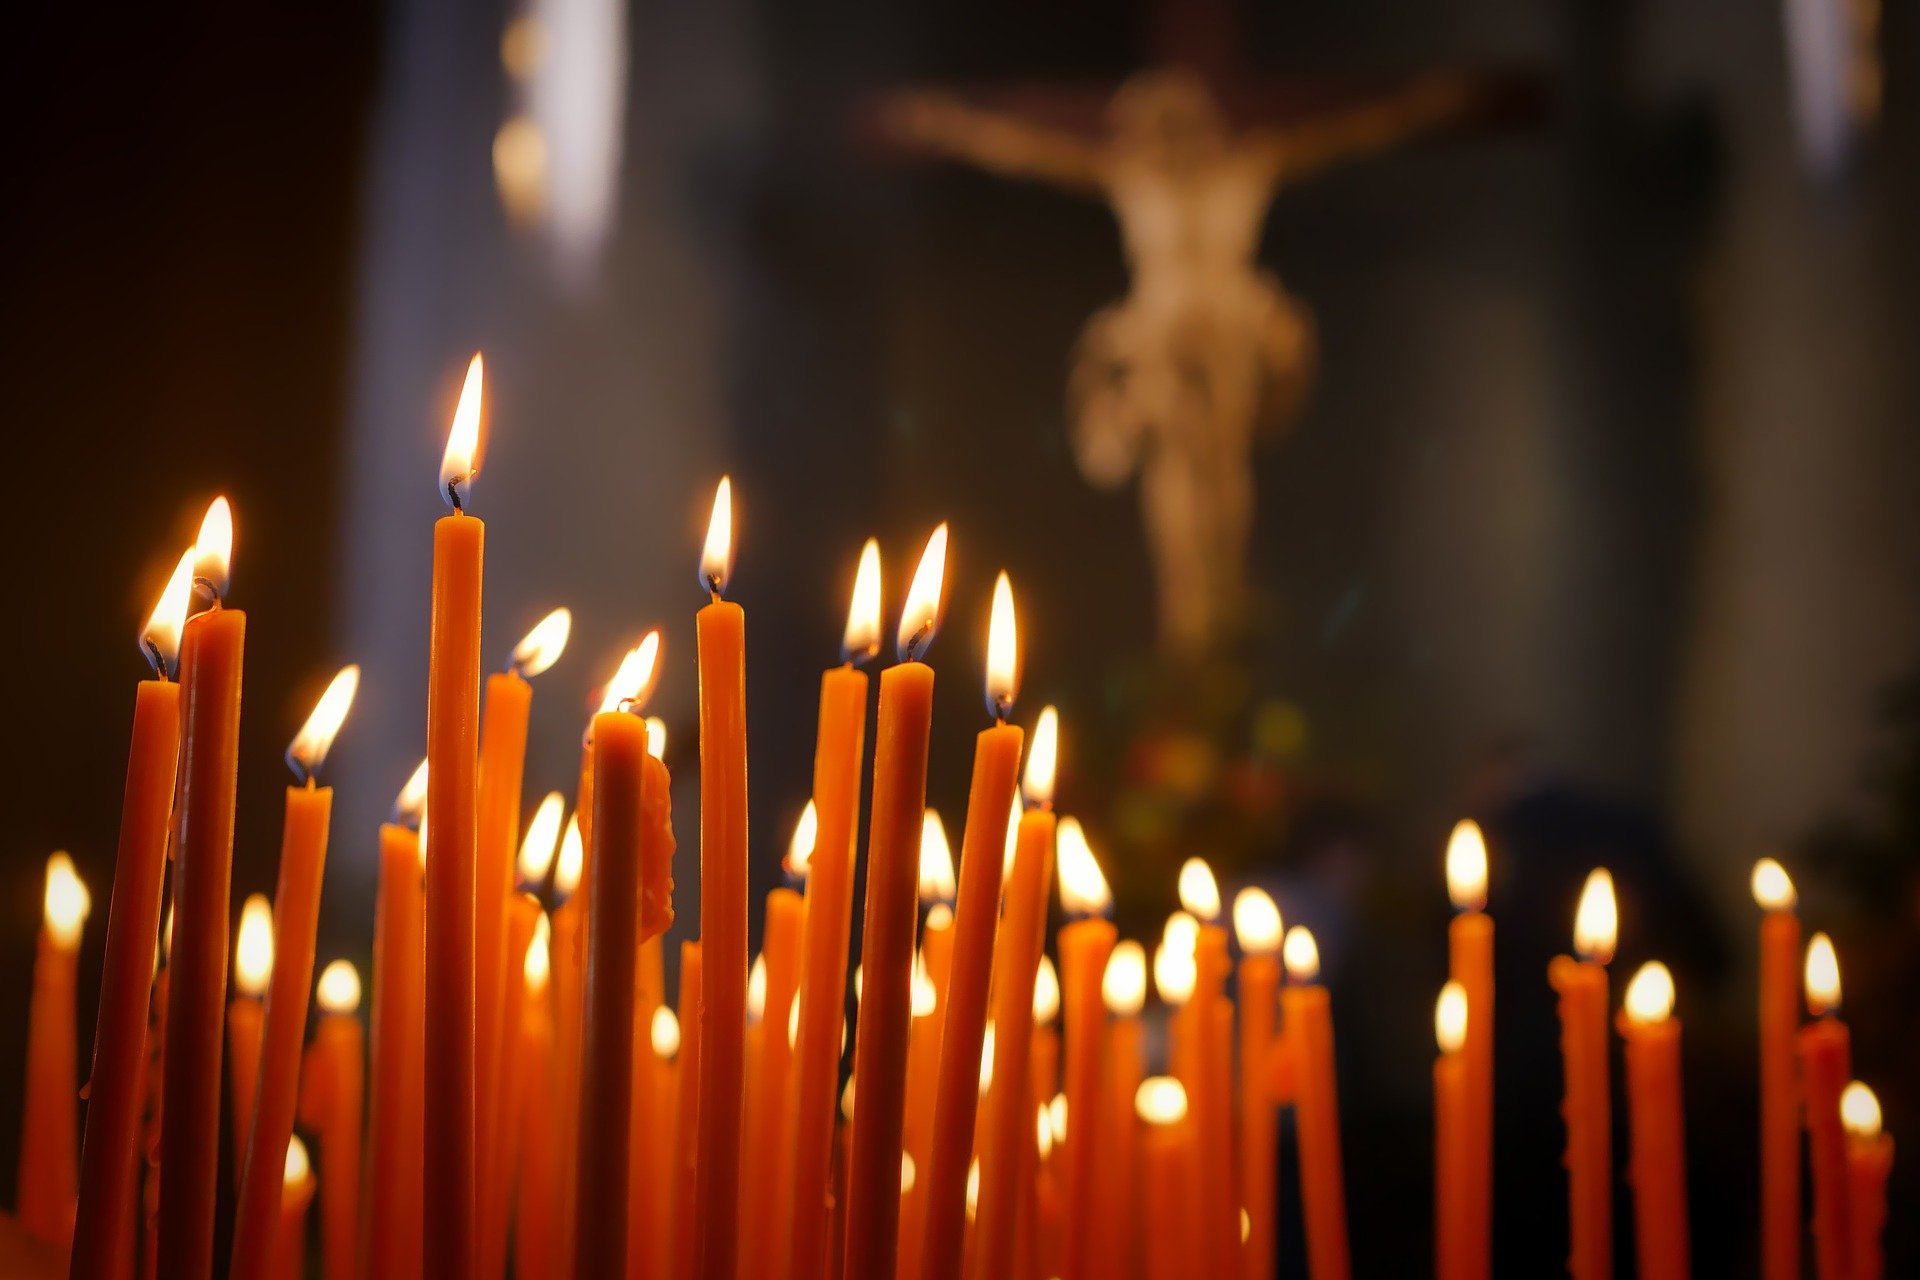 prier bougies.jpg?resize=412,232 - Persécution: plus de 3000 chrétiens sont tués dans le monde chaque année